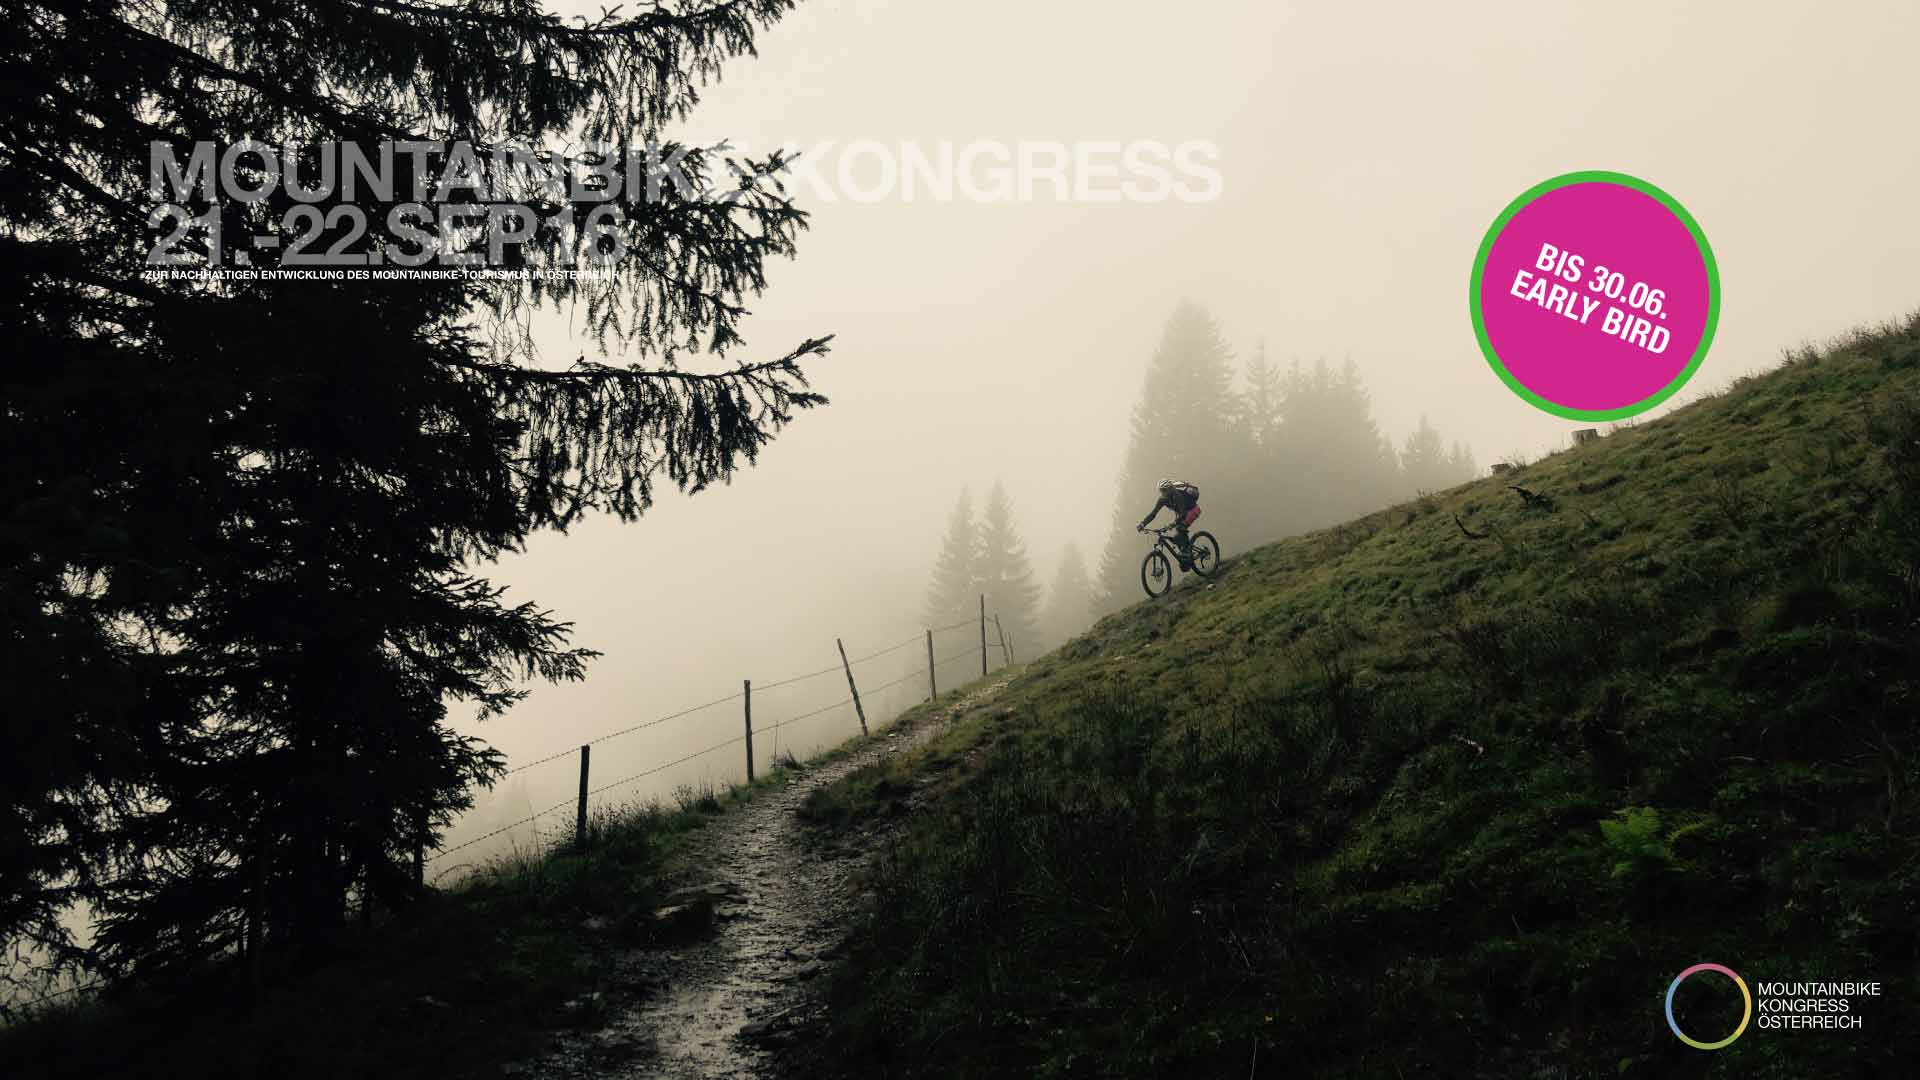 Event – Mountainbike-Kongress Saalbach-Hinterglemm 2016: Mit Leidenschaft zur Nachhaltigkeit – Mountainbiken als Freizeitsport der Zukunft?